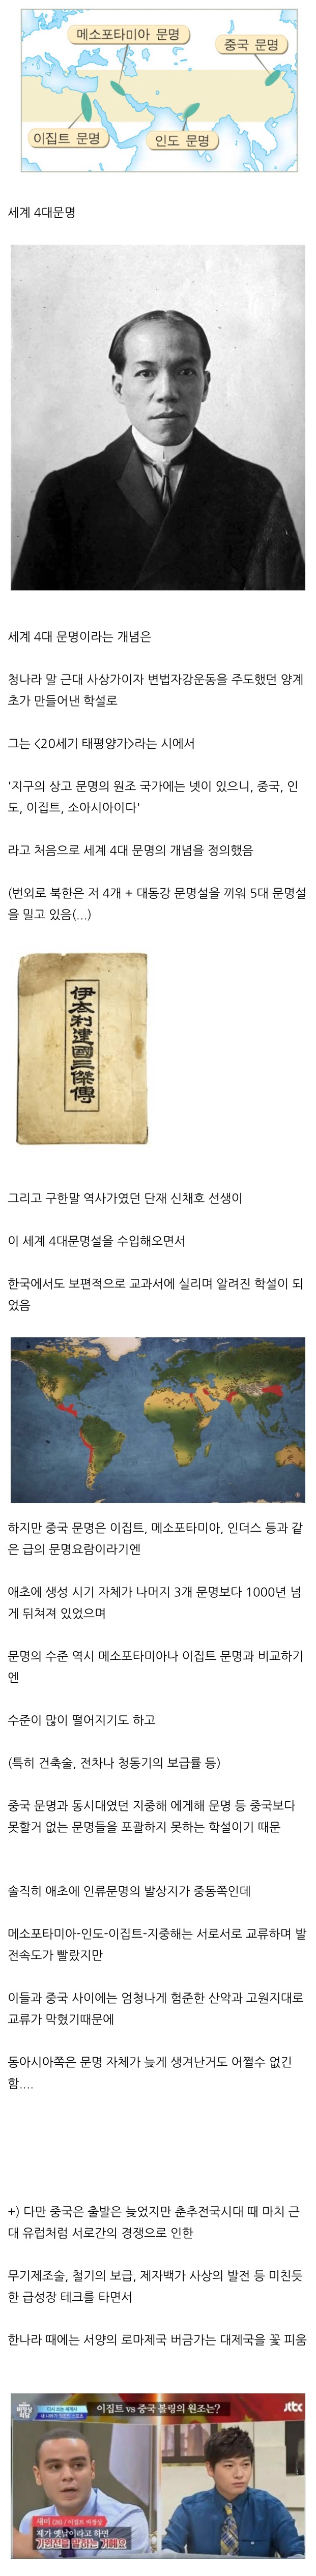 한국과 중국에서 정설로 배우는 학설